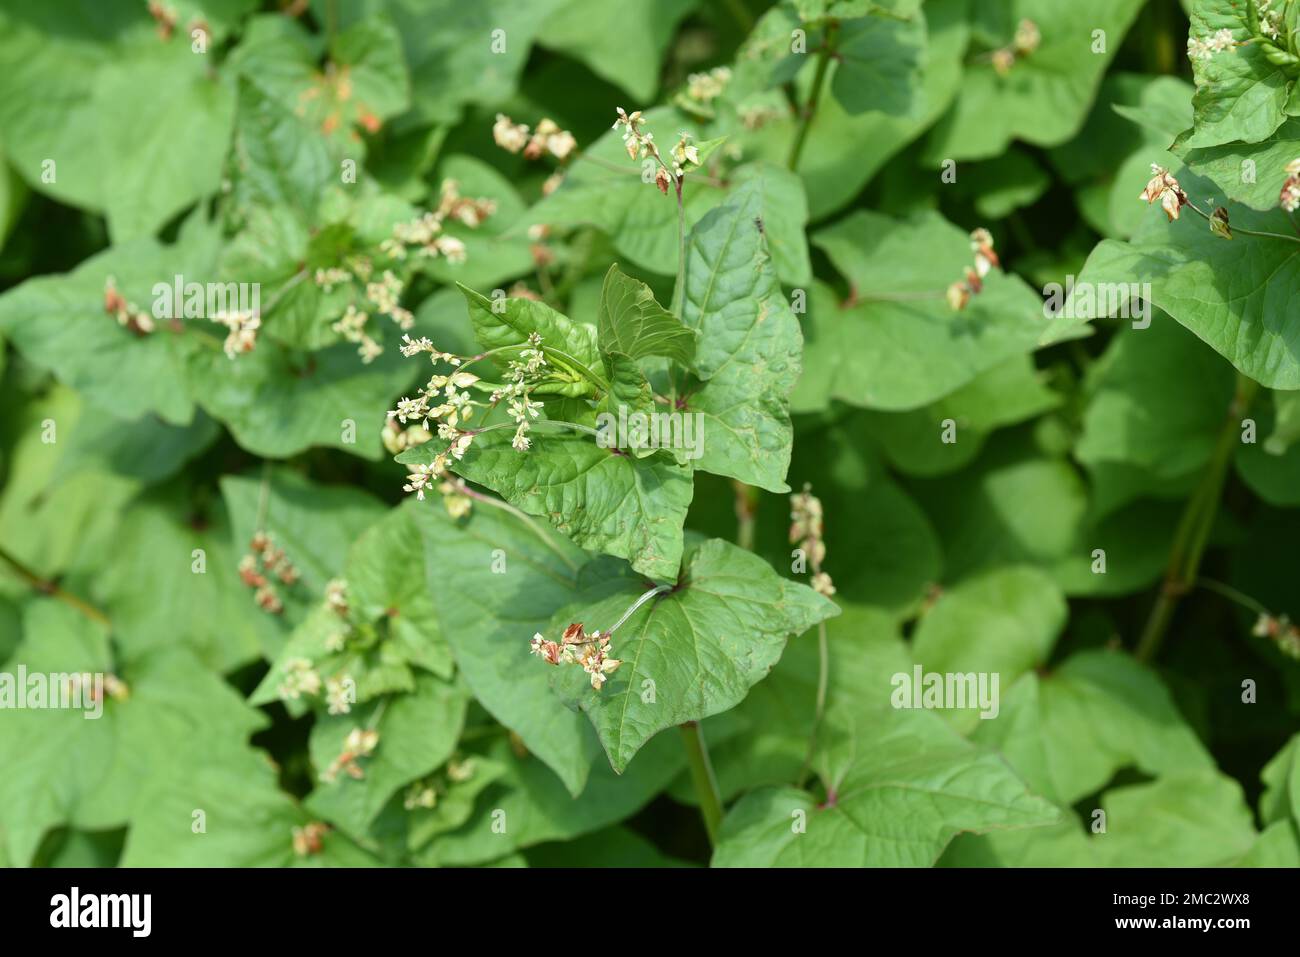 Buchweizen, Fagopyrum tataricum, ist eine wichtige Heil-und Getreidepflanze. Buckwheat, Fagopyrum tataricum, is an important medicinal and cereal crop Stock Photo